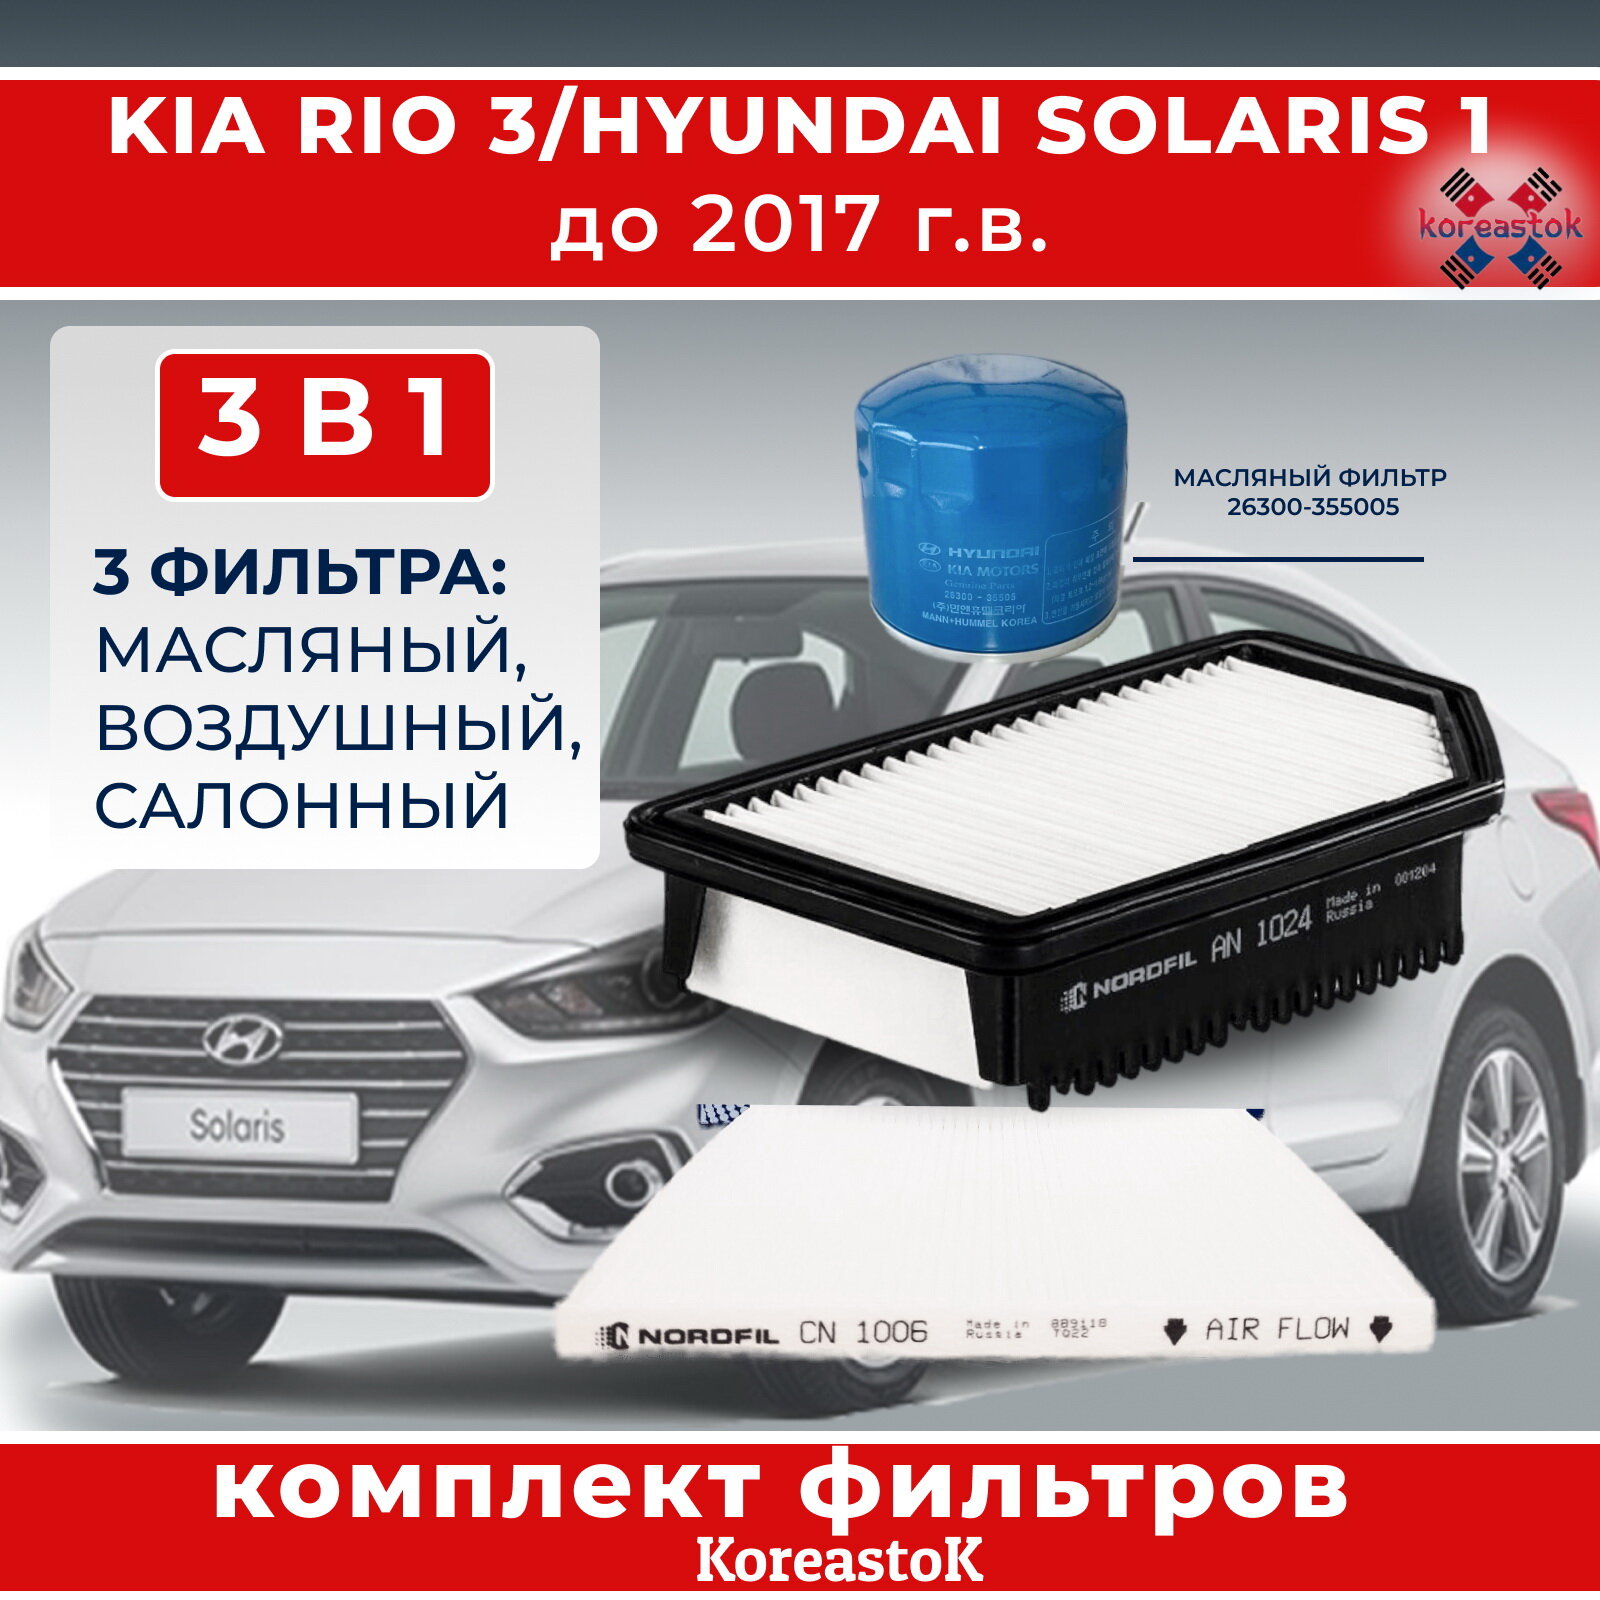 Набор из 3-х фильтров для KIA Rio 3  Hyunday Solaris 1 до 2017 г. Фильтры масляный ориг воздушный салонный .